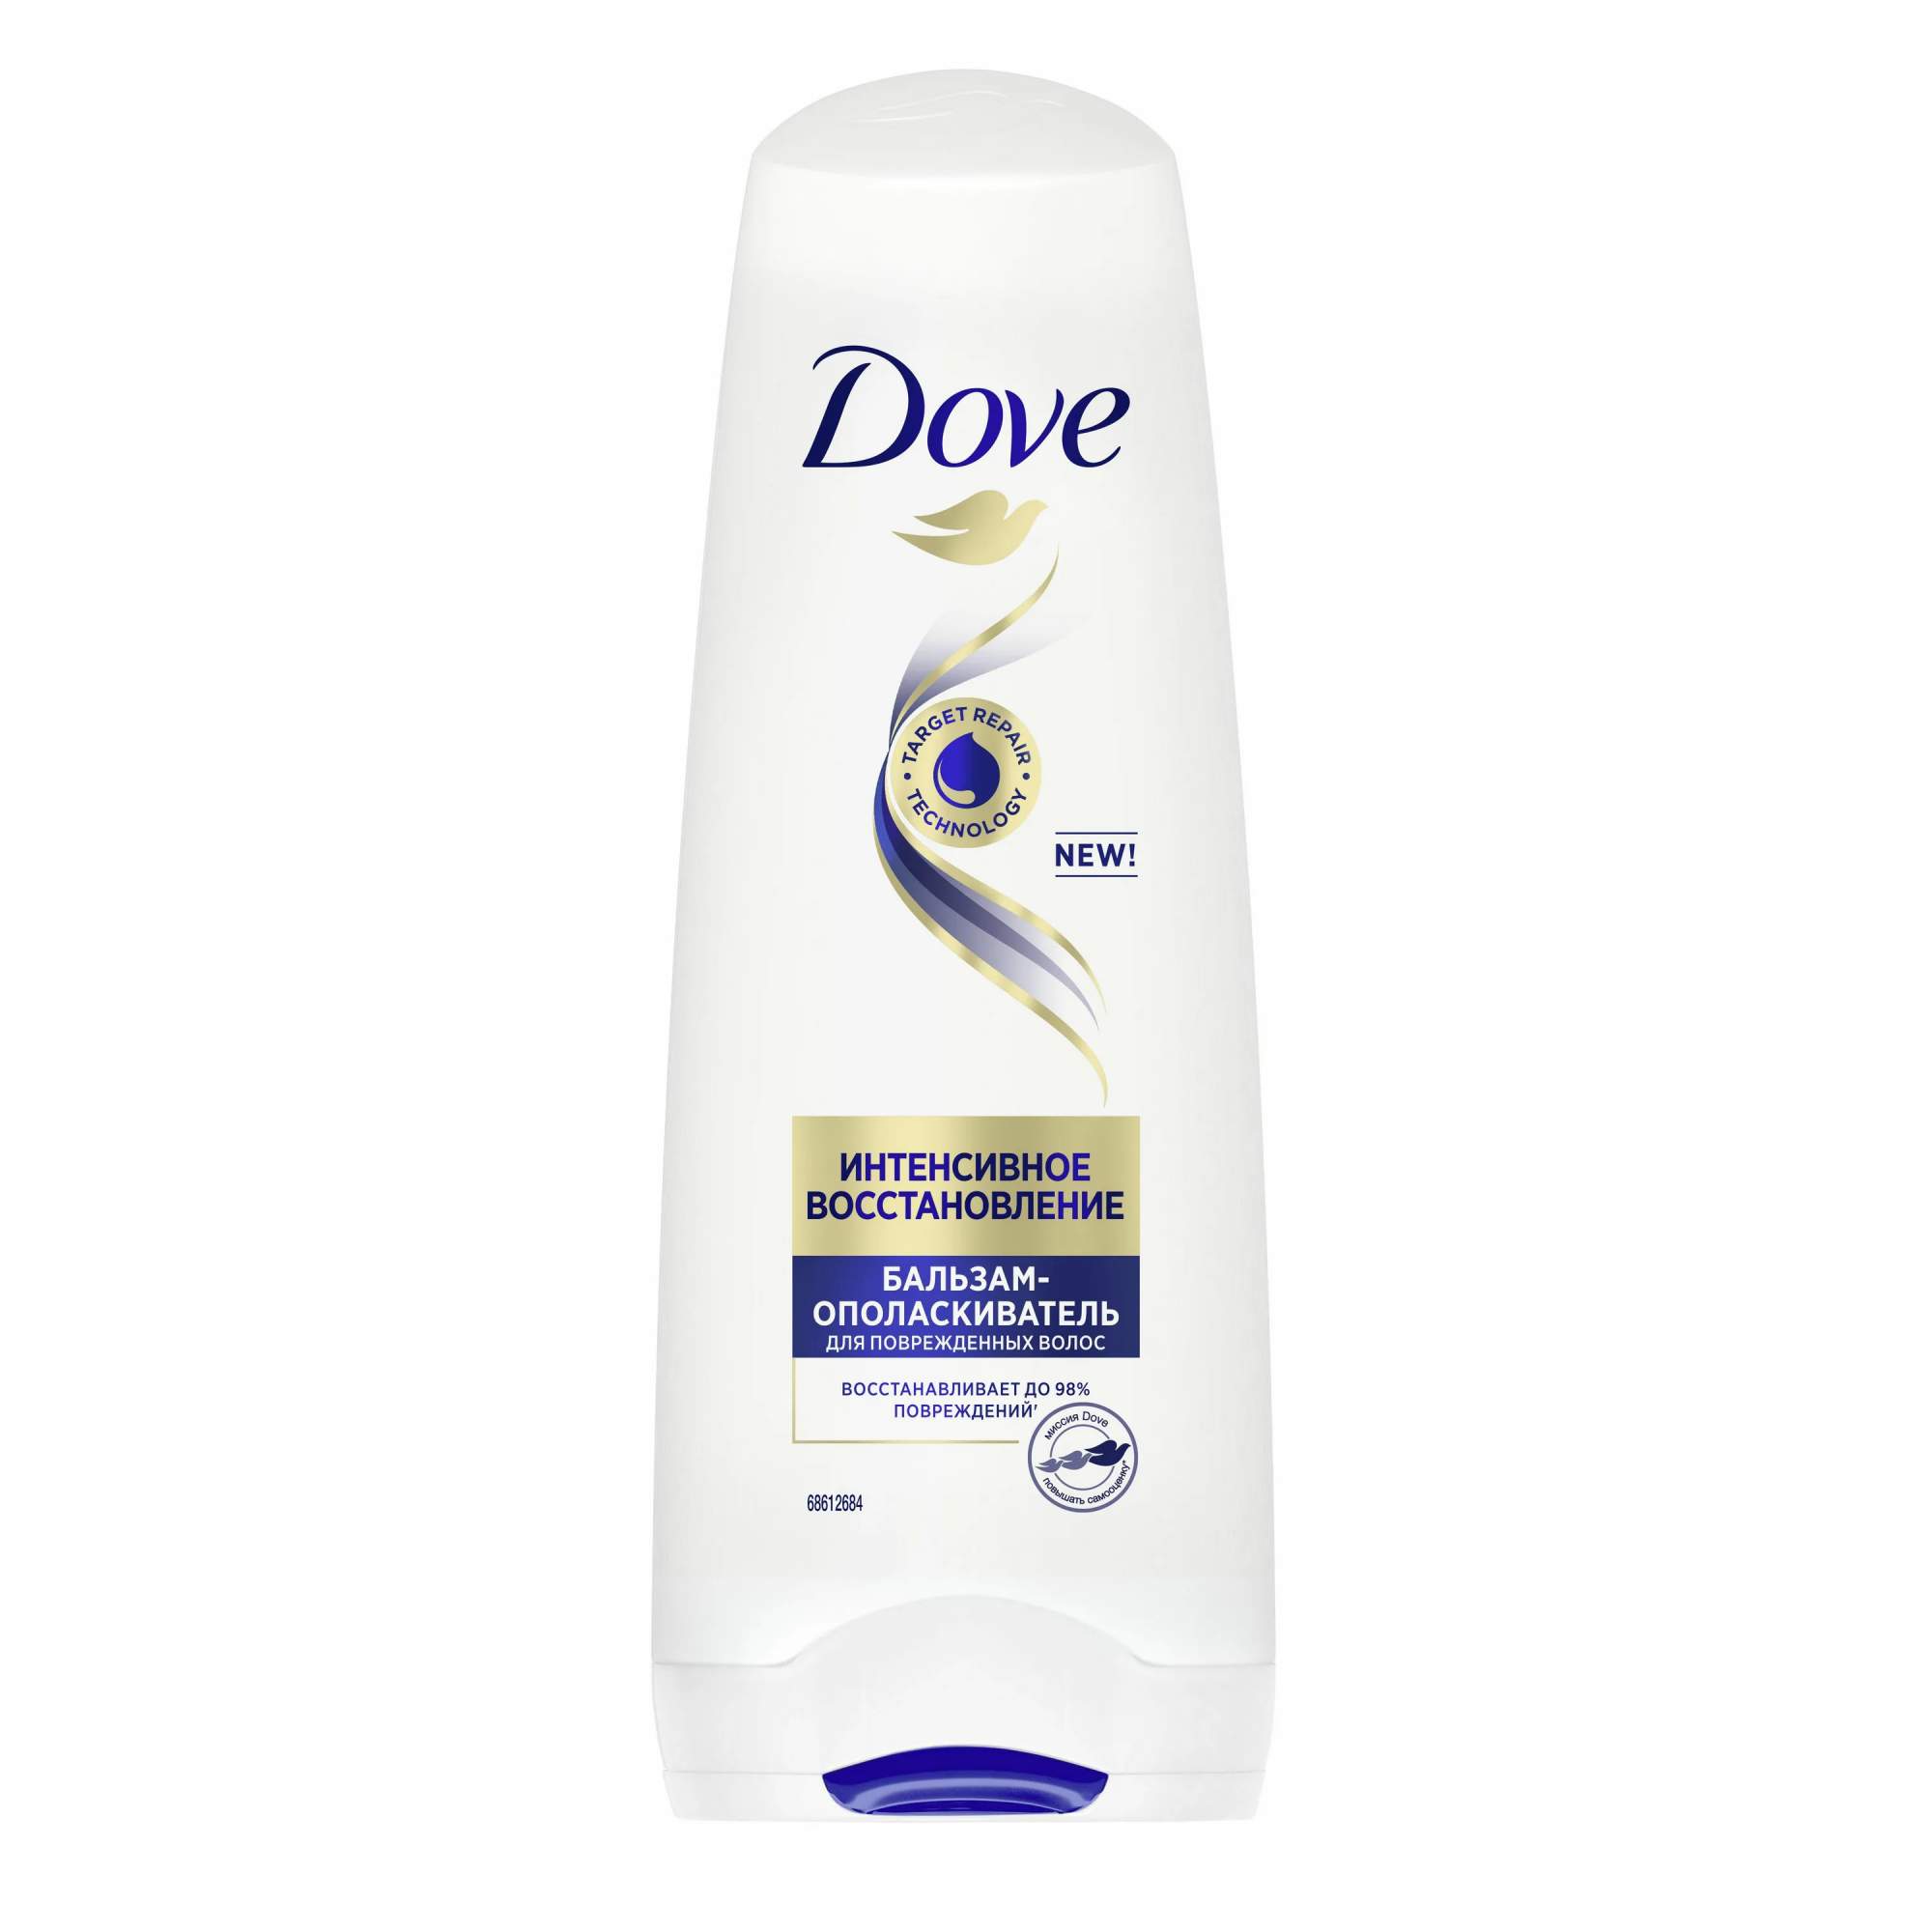 Купить бальзам для волос Dove Nutritive Solutions Интенсивное восстановление, 200 мл, цены на Мегамаркет | Артикул: 100000889339